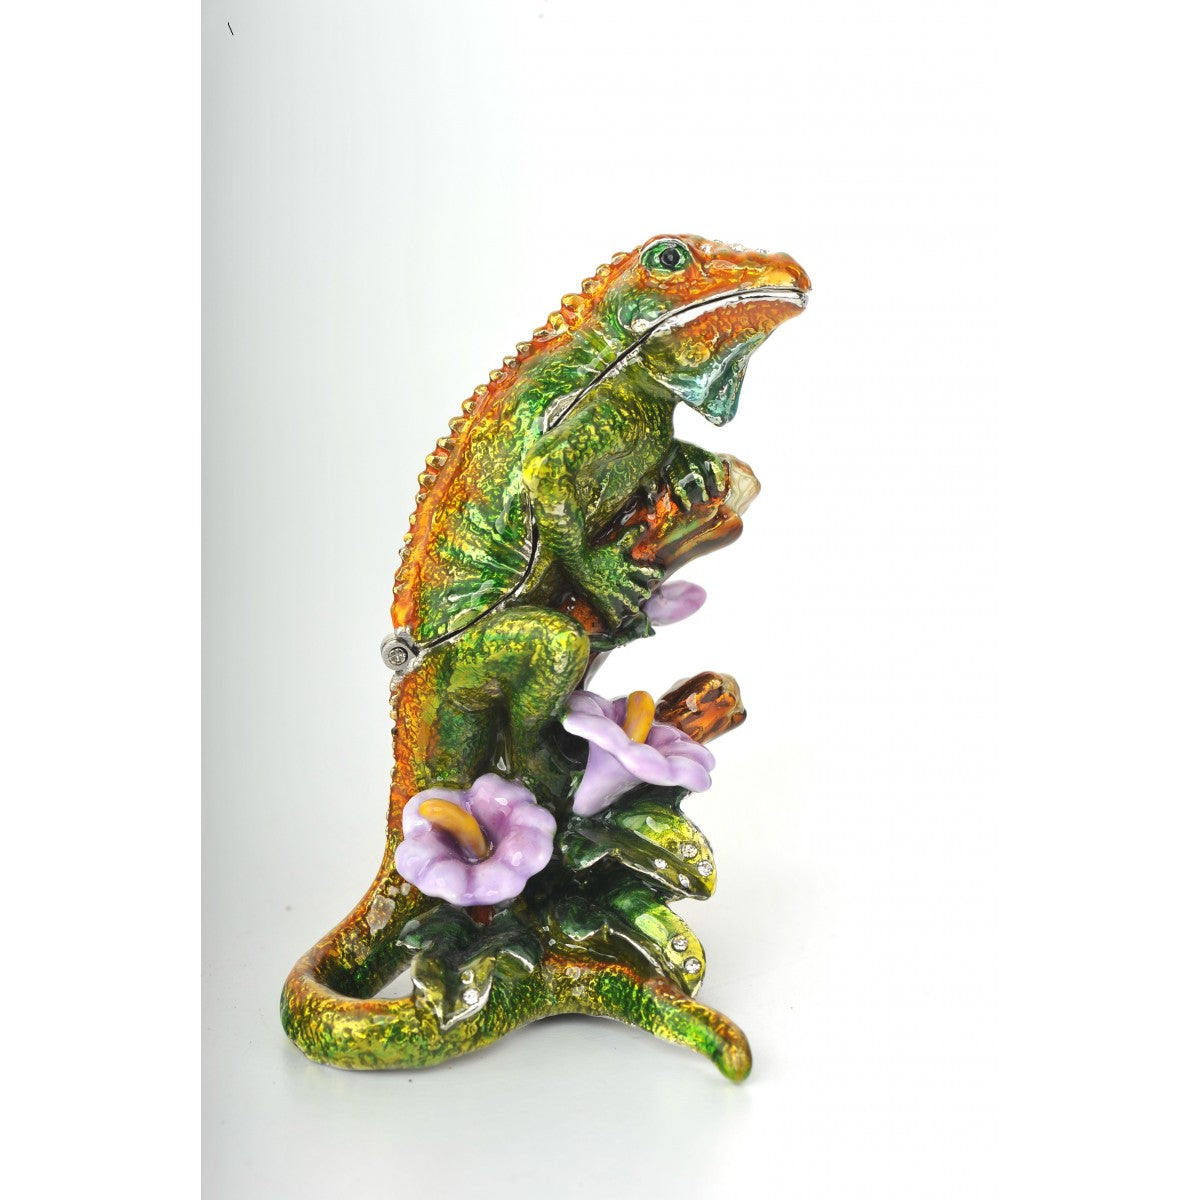 Green lizard by Keren Kopal